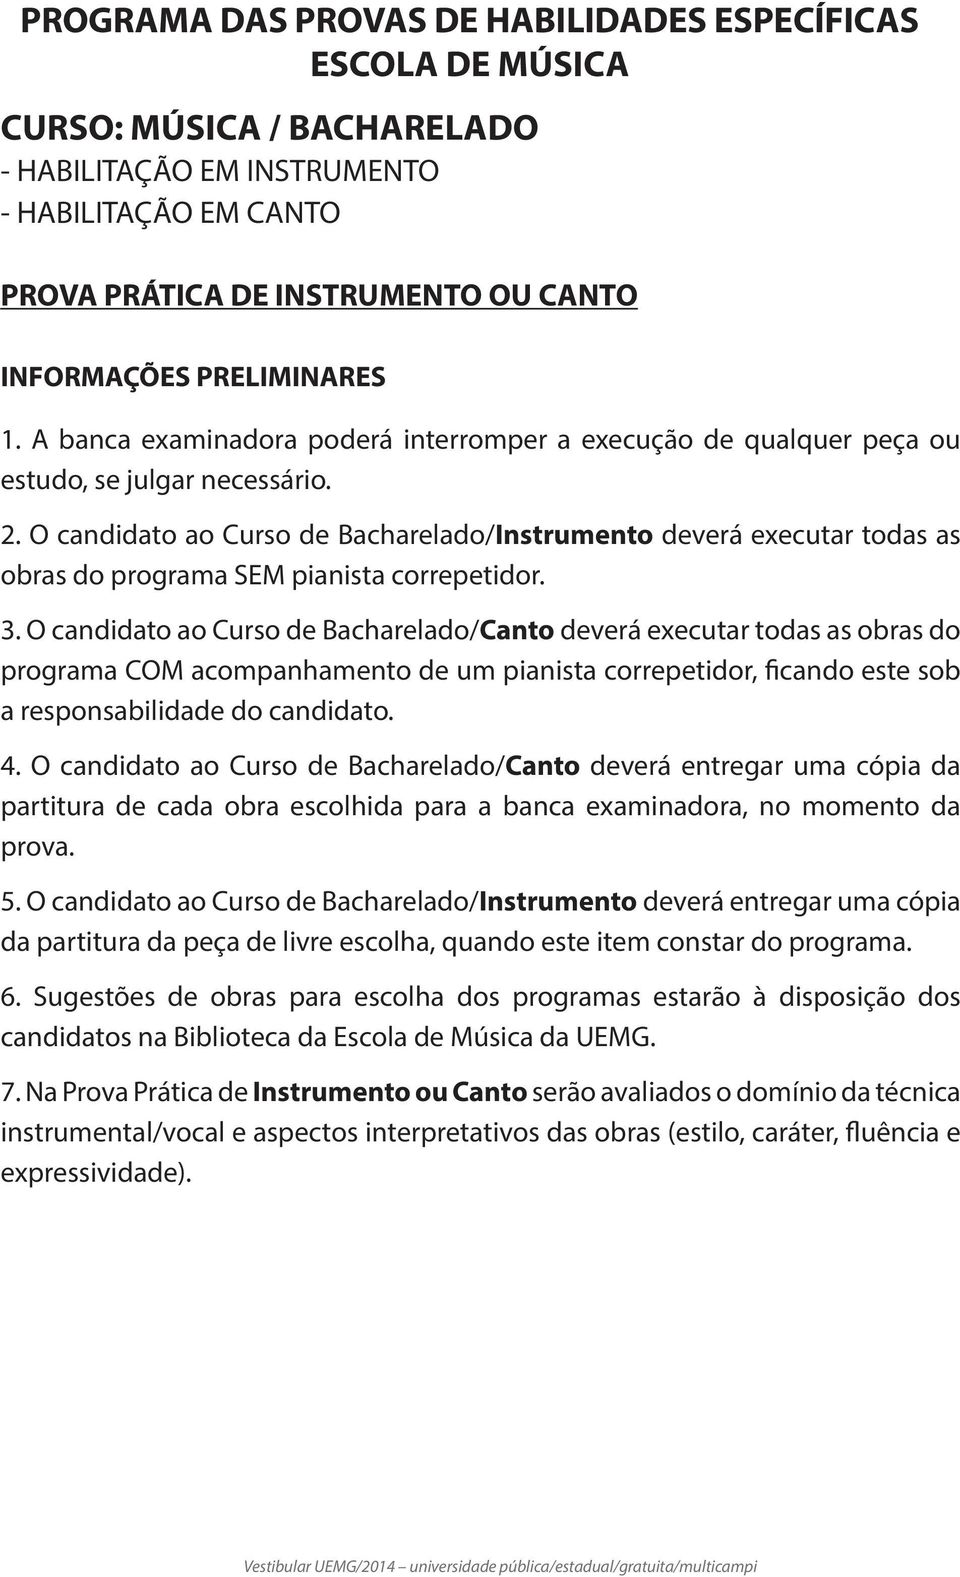 O candidato ao Curso de Bacharelado/Instrumento deverá executar todas as obras do programa SEM pianista correpetidor. 3.